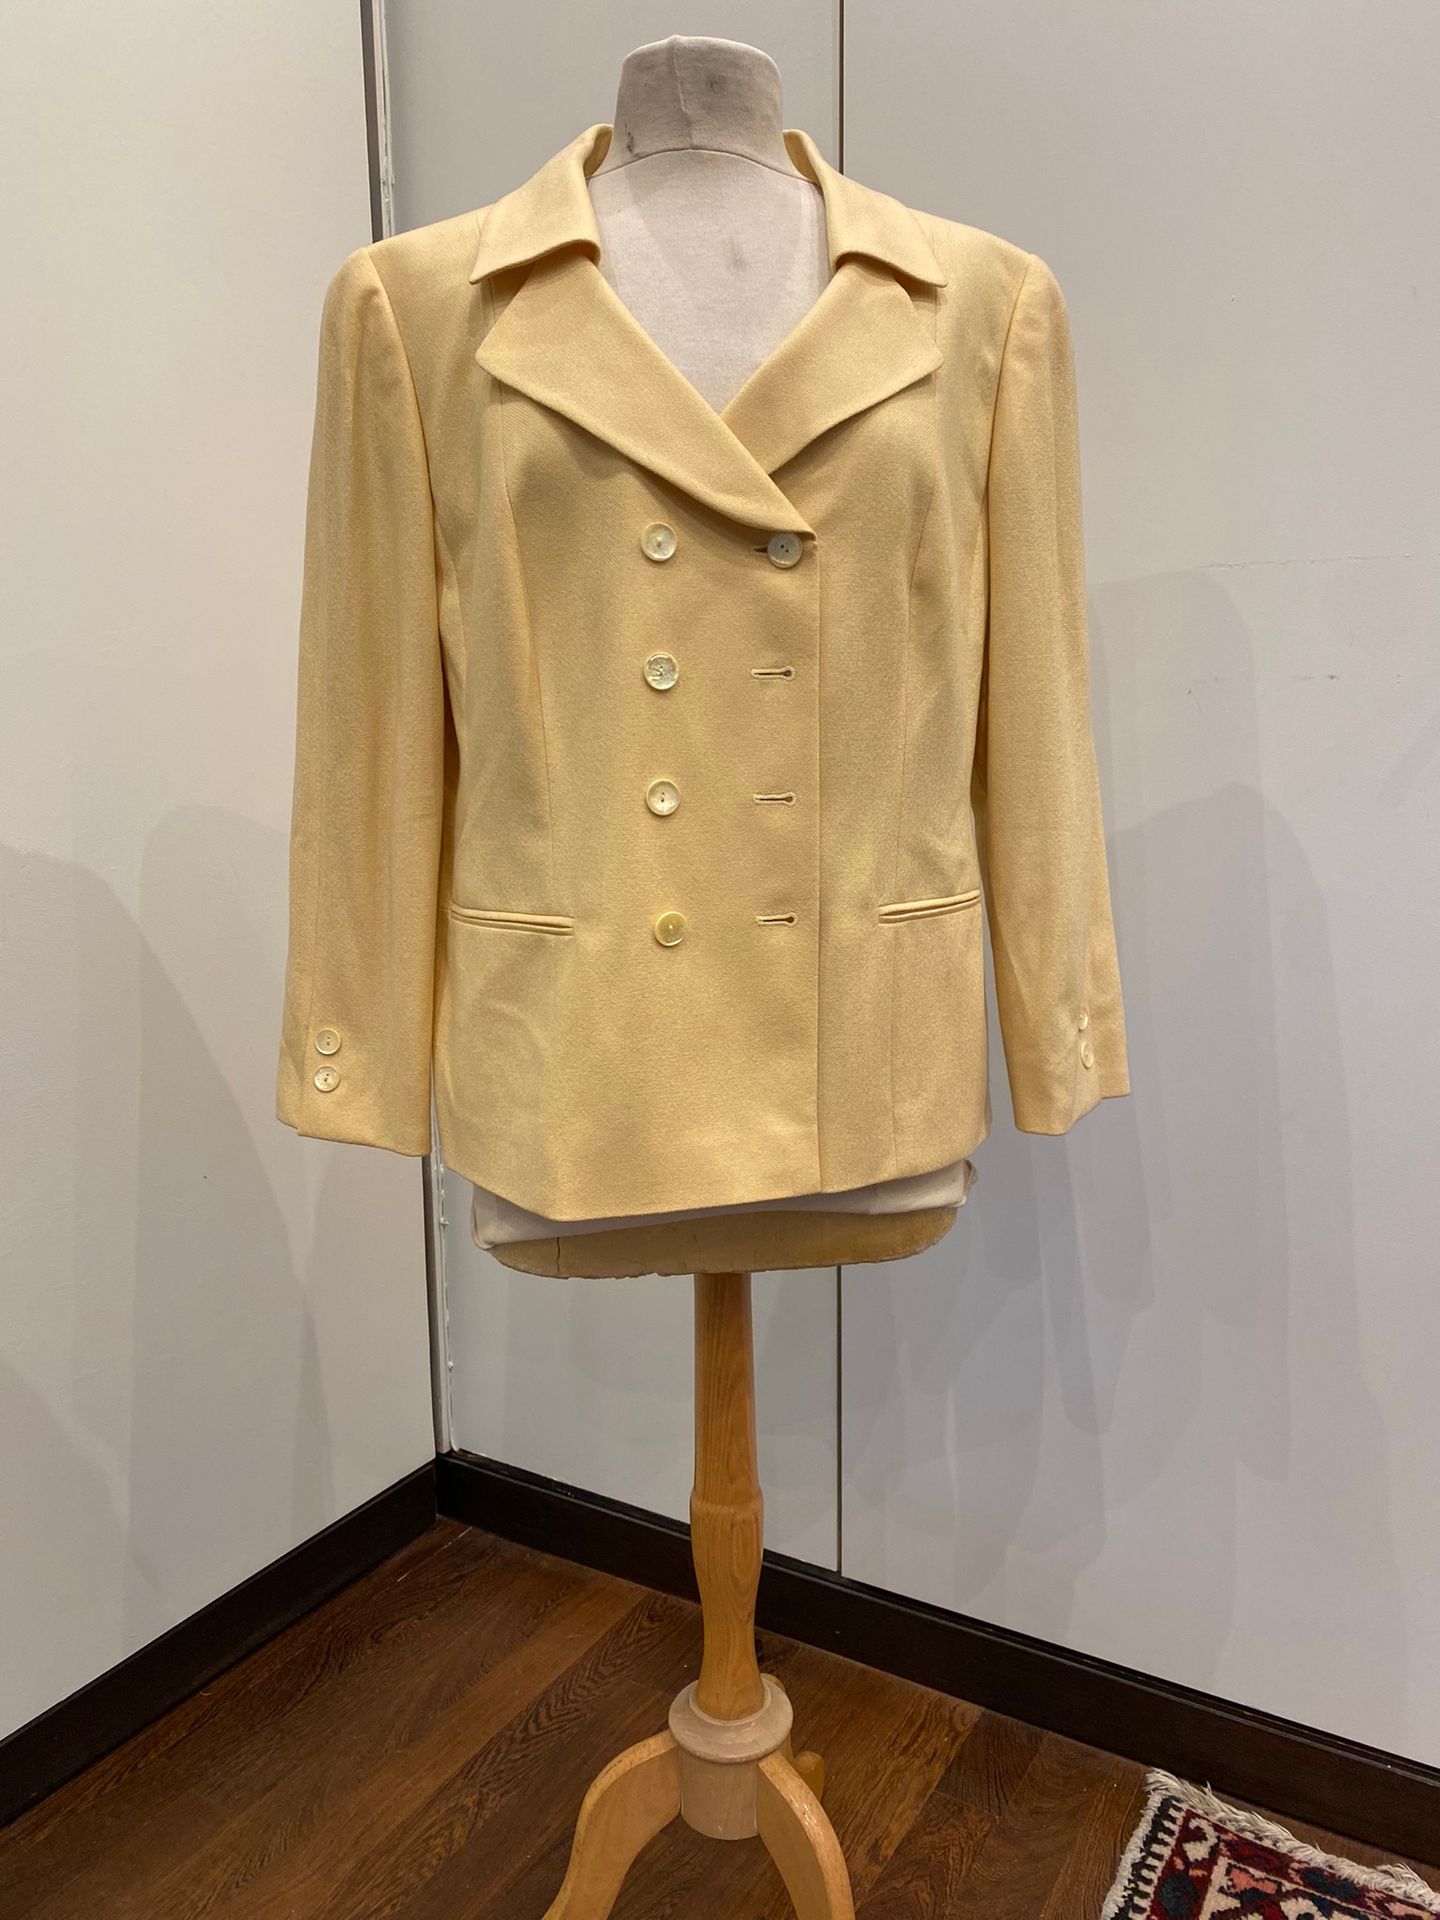 Null LOUIS FERAUD, women's wool blend jacket

Size 46